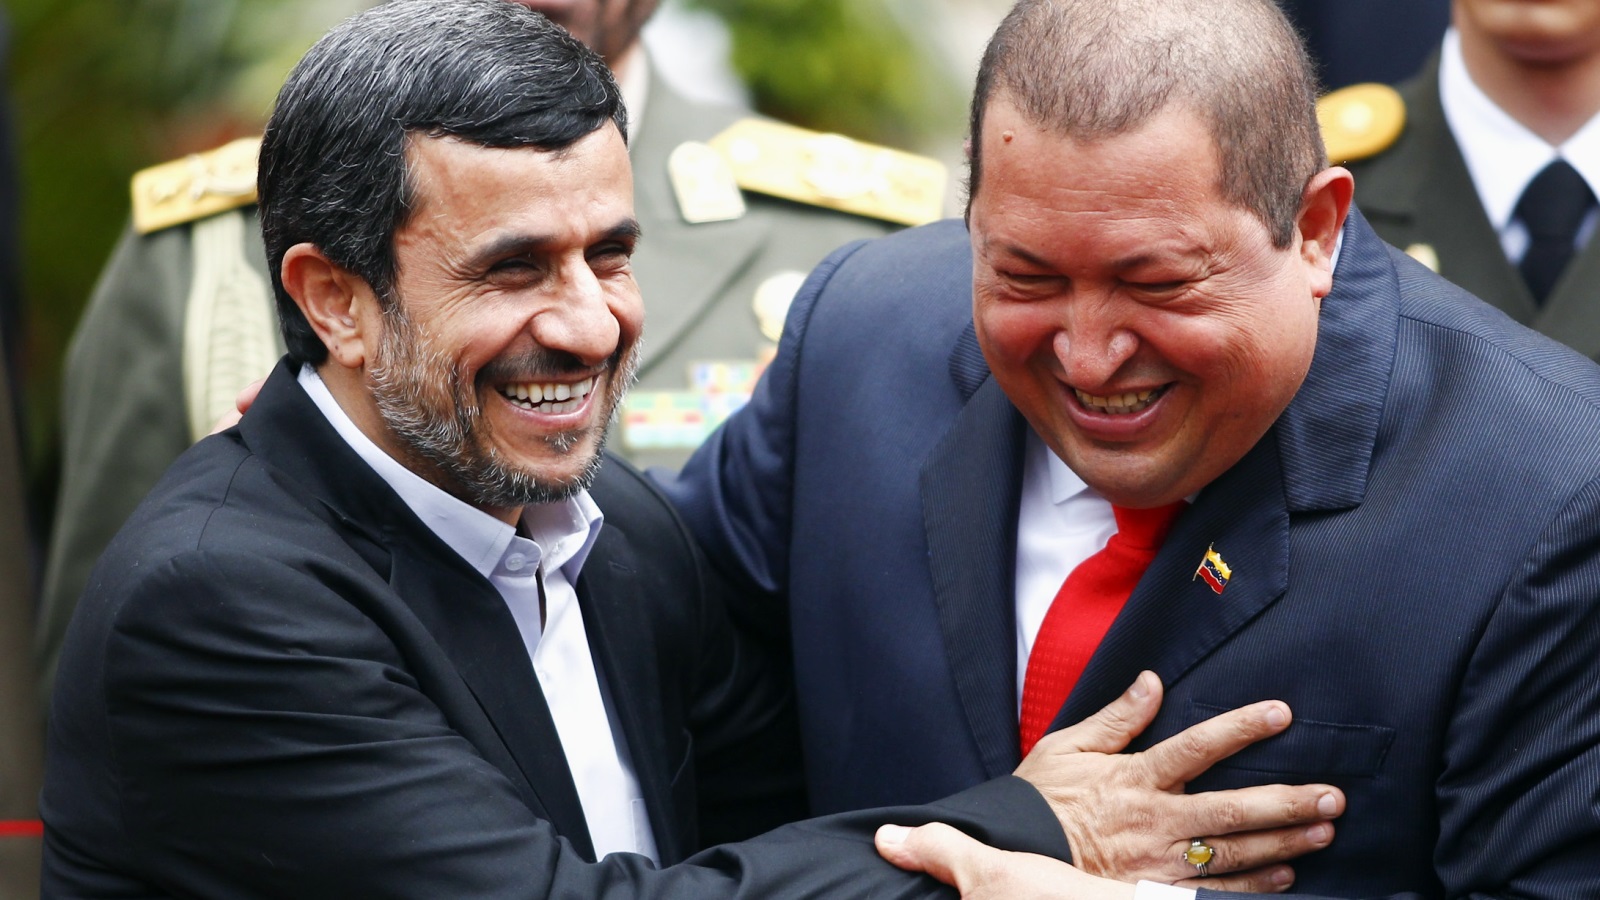 صورة أرشيفية تجمع الرئيس الإيراني الأسبق نجات والزعيم الفنزويلي هوغو تشافيز